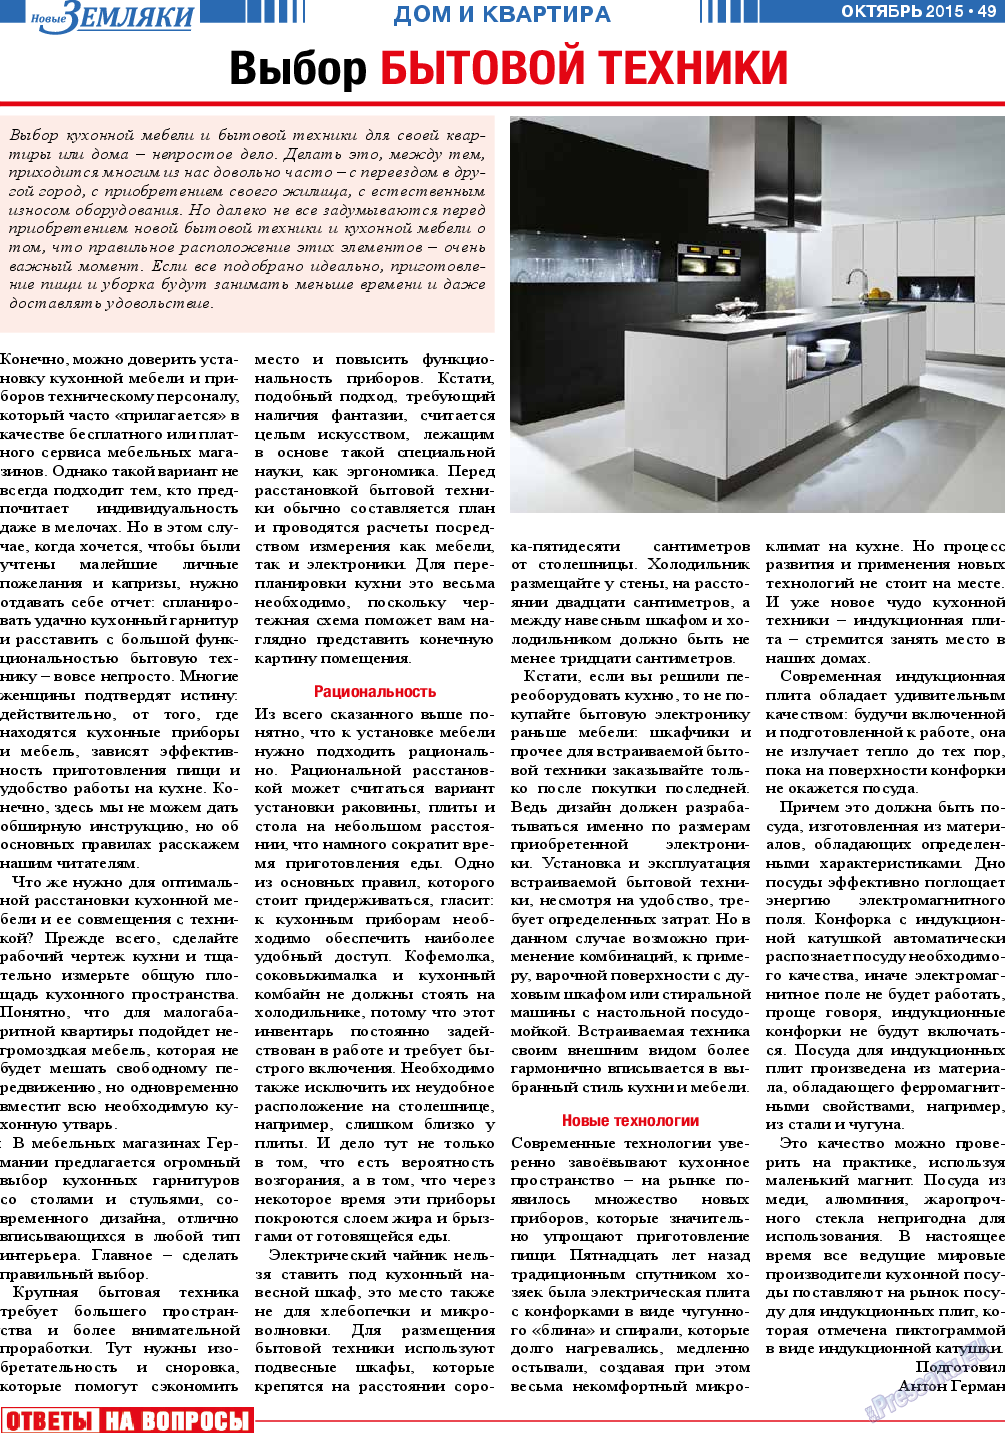 Новые Земляки (газета). 2015 год, номер 10, стр. 49